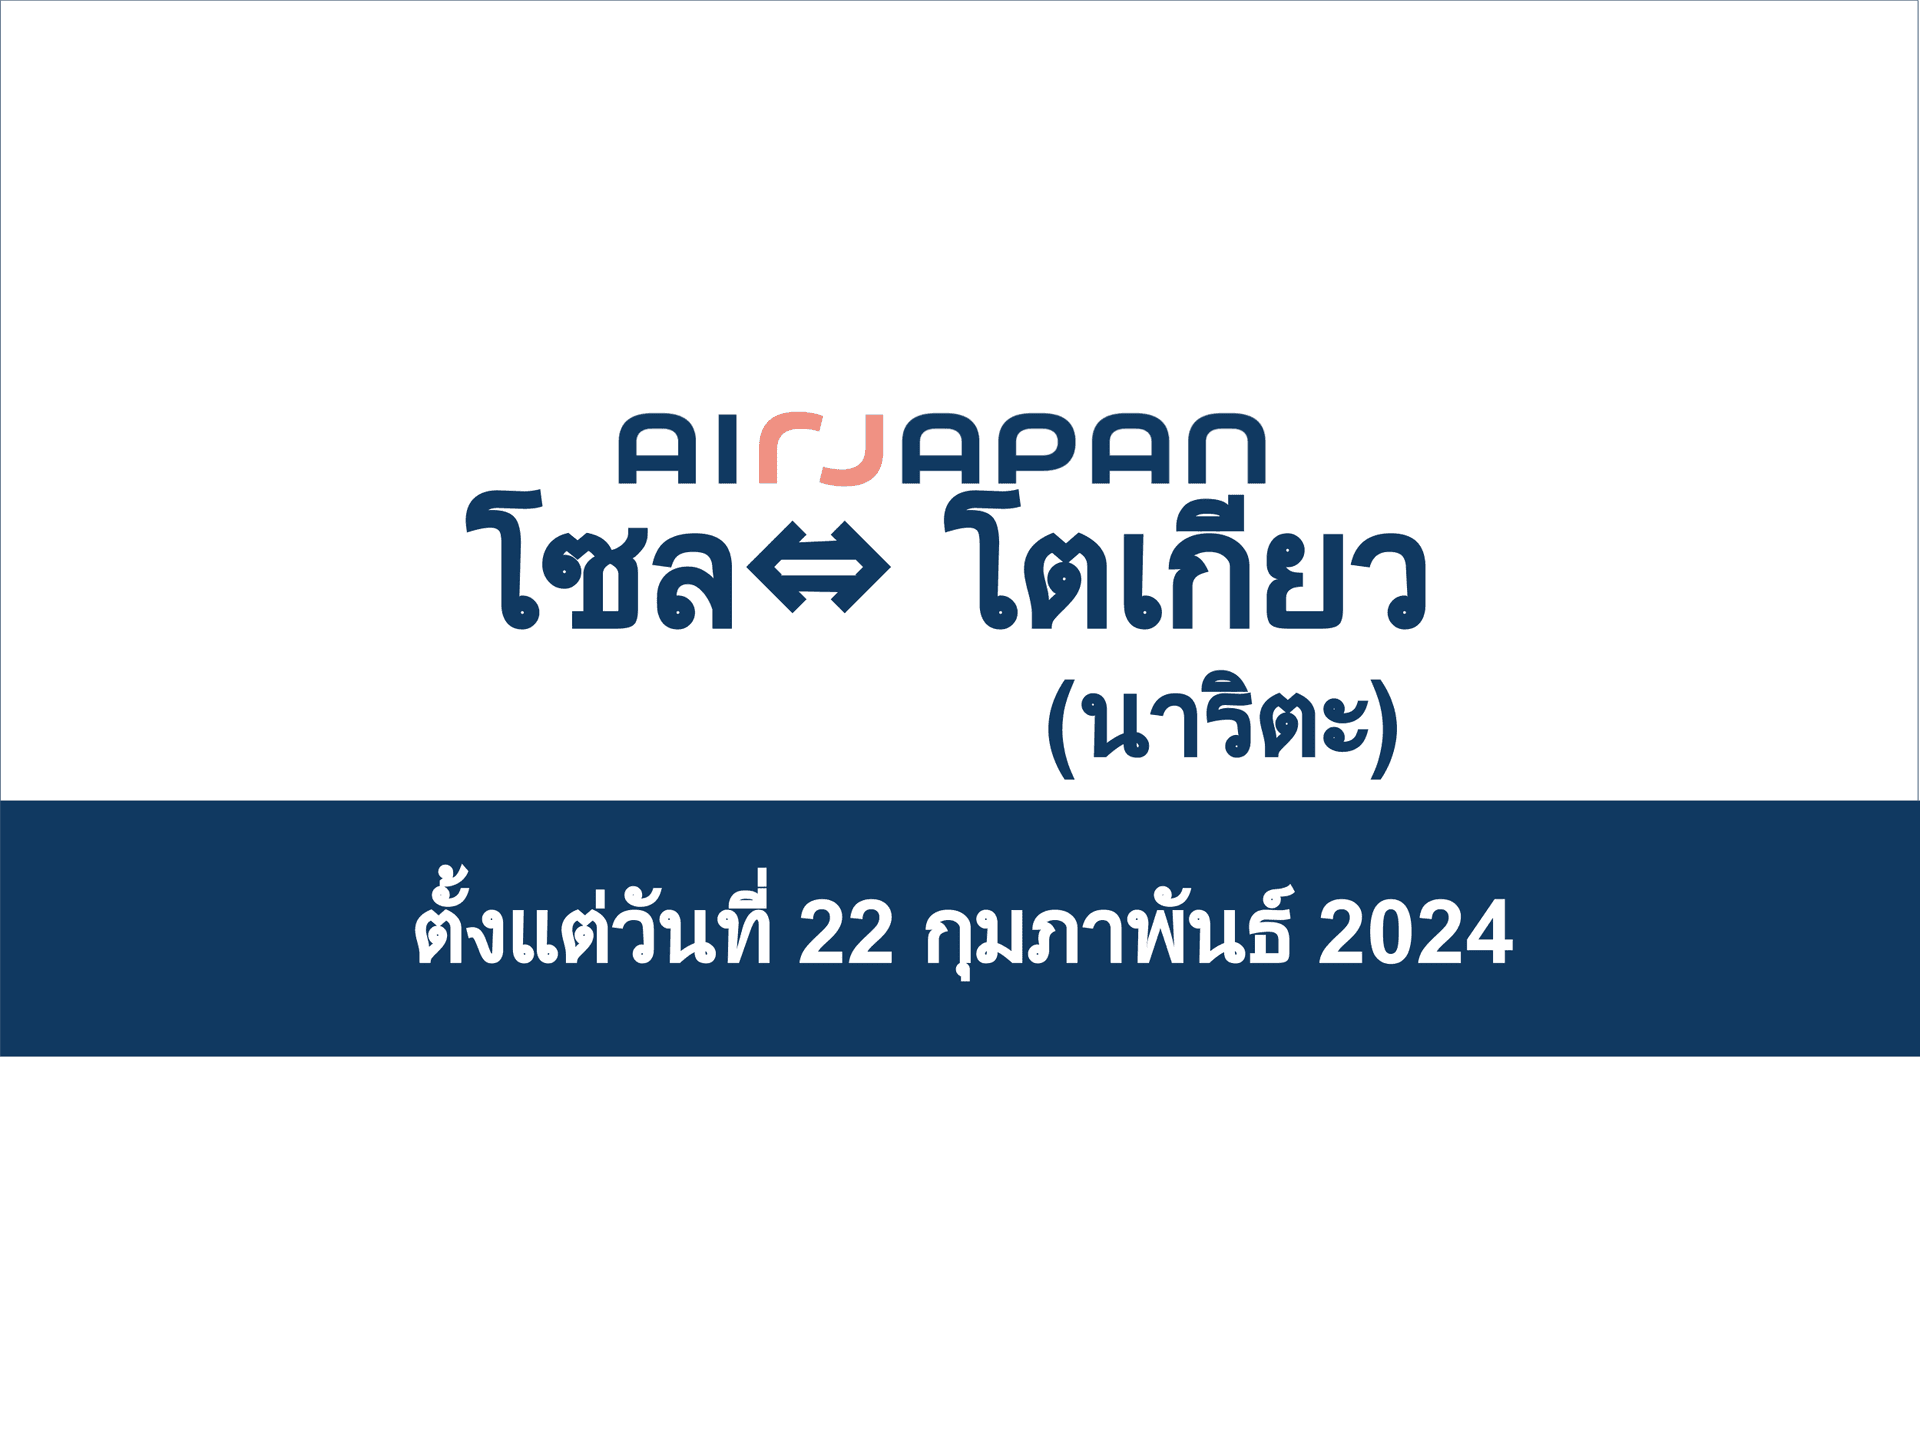 เส้นทาง NRT-ICN จะเริ่มวันศุกร์ที่ 22 กุมภาพันธ์ 2024